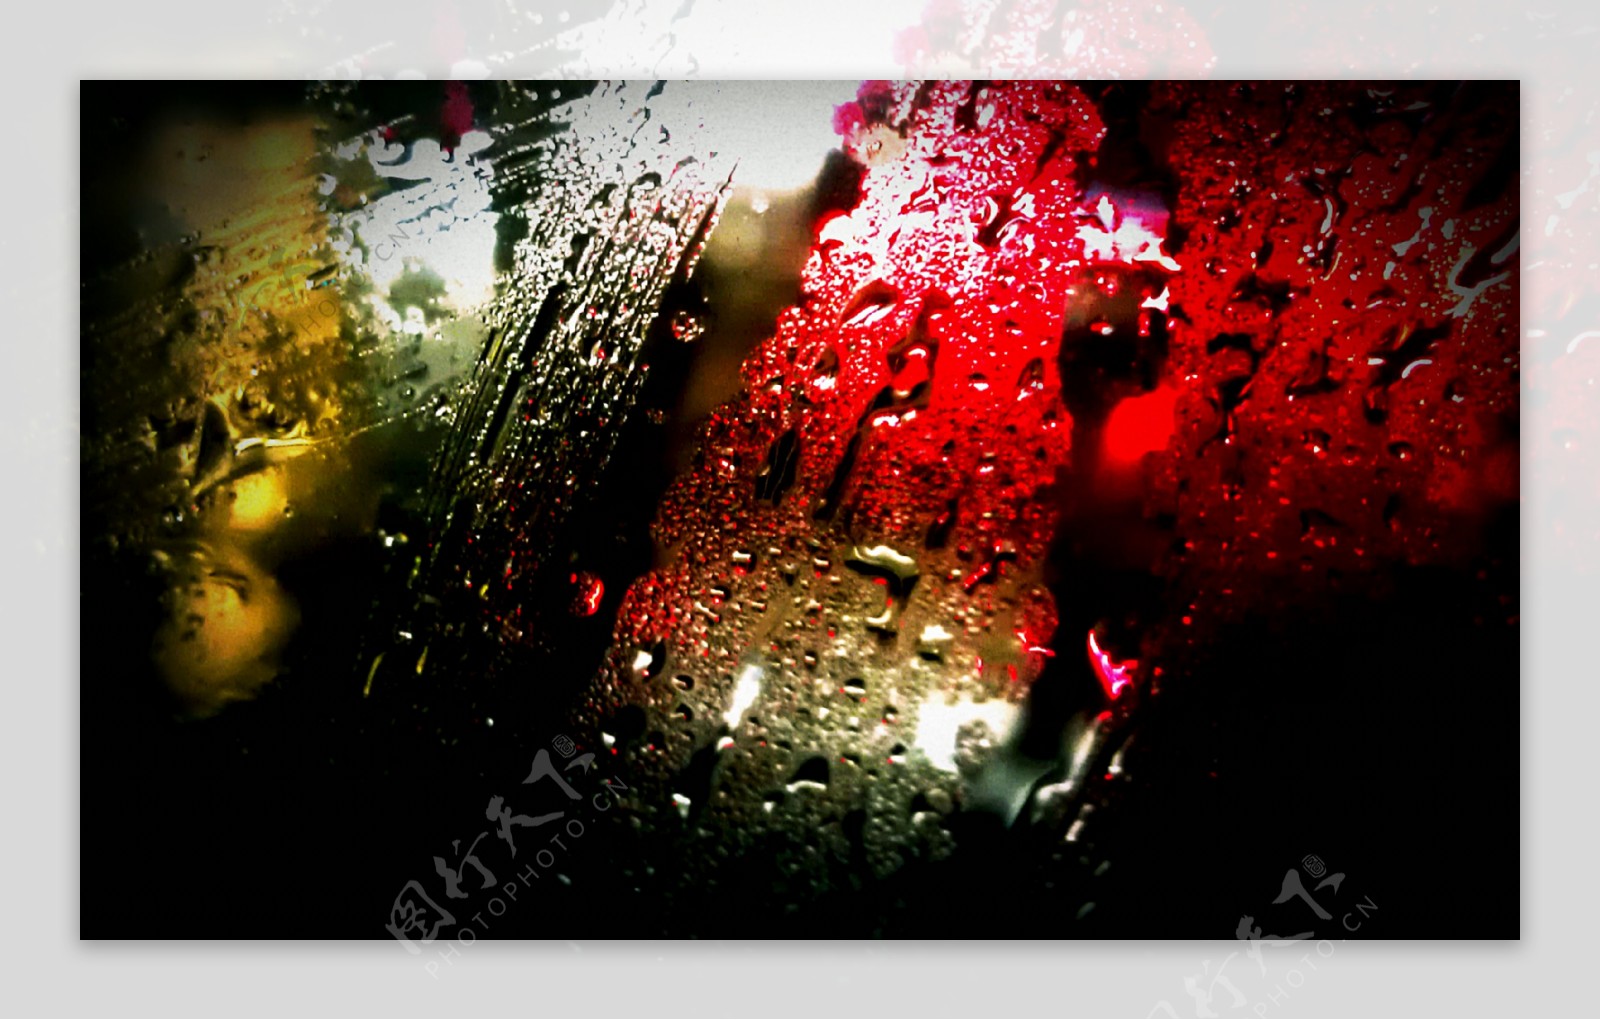 雨夜图片